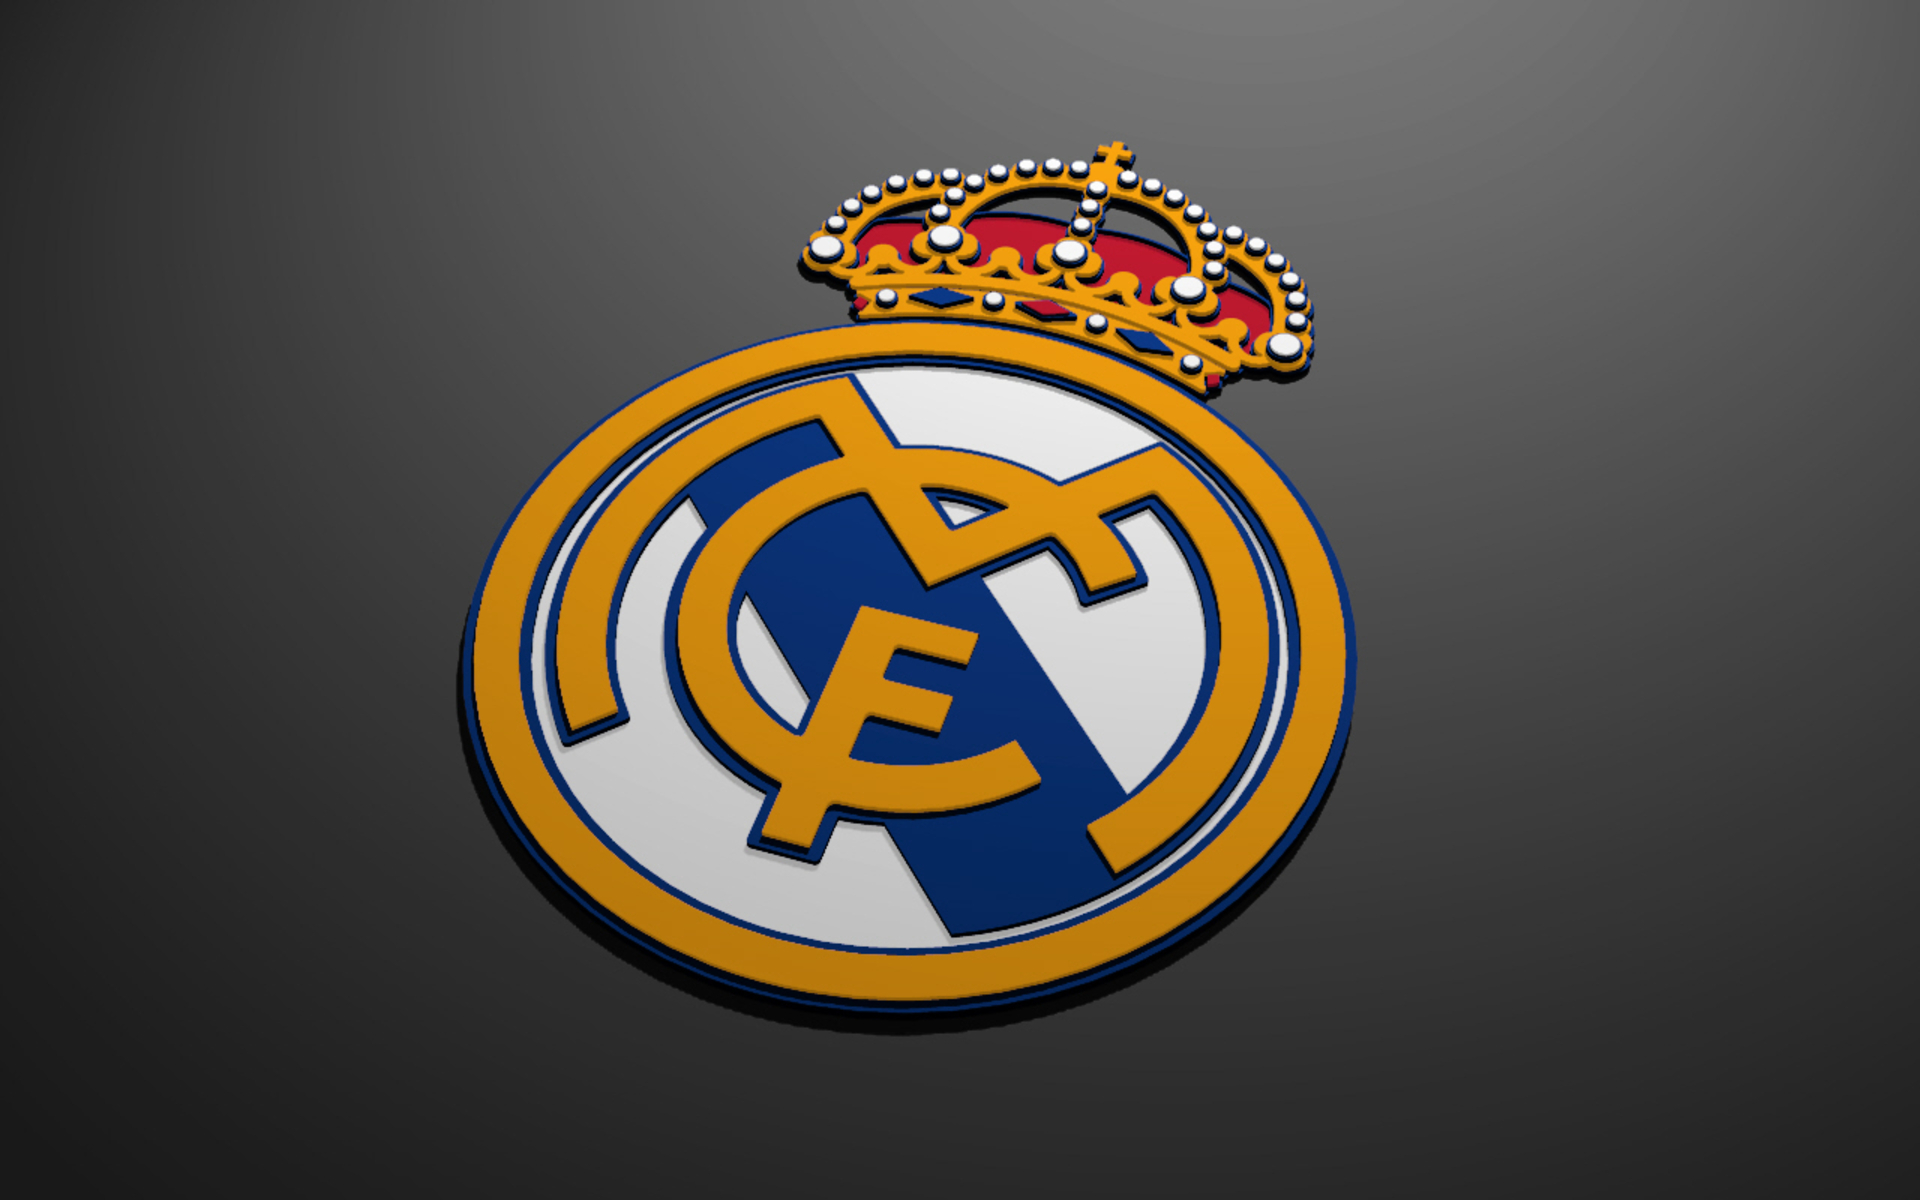 Real Madrid Logo 2016 Football Club